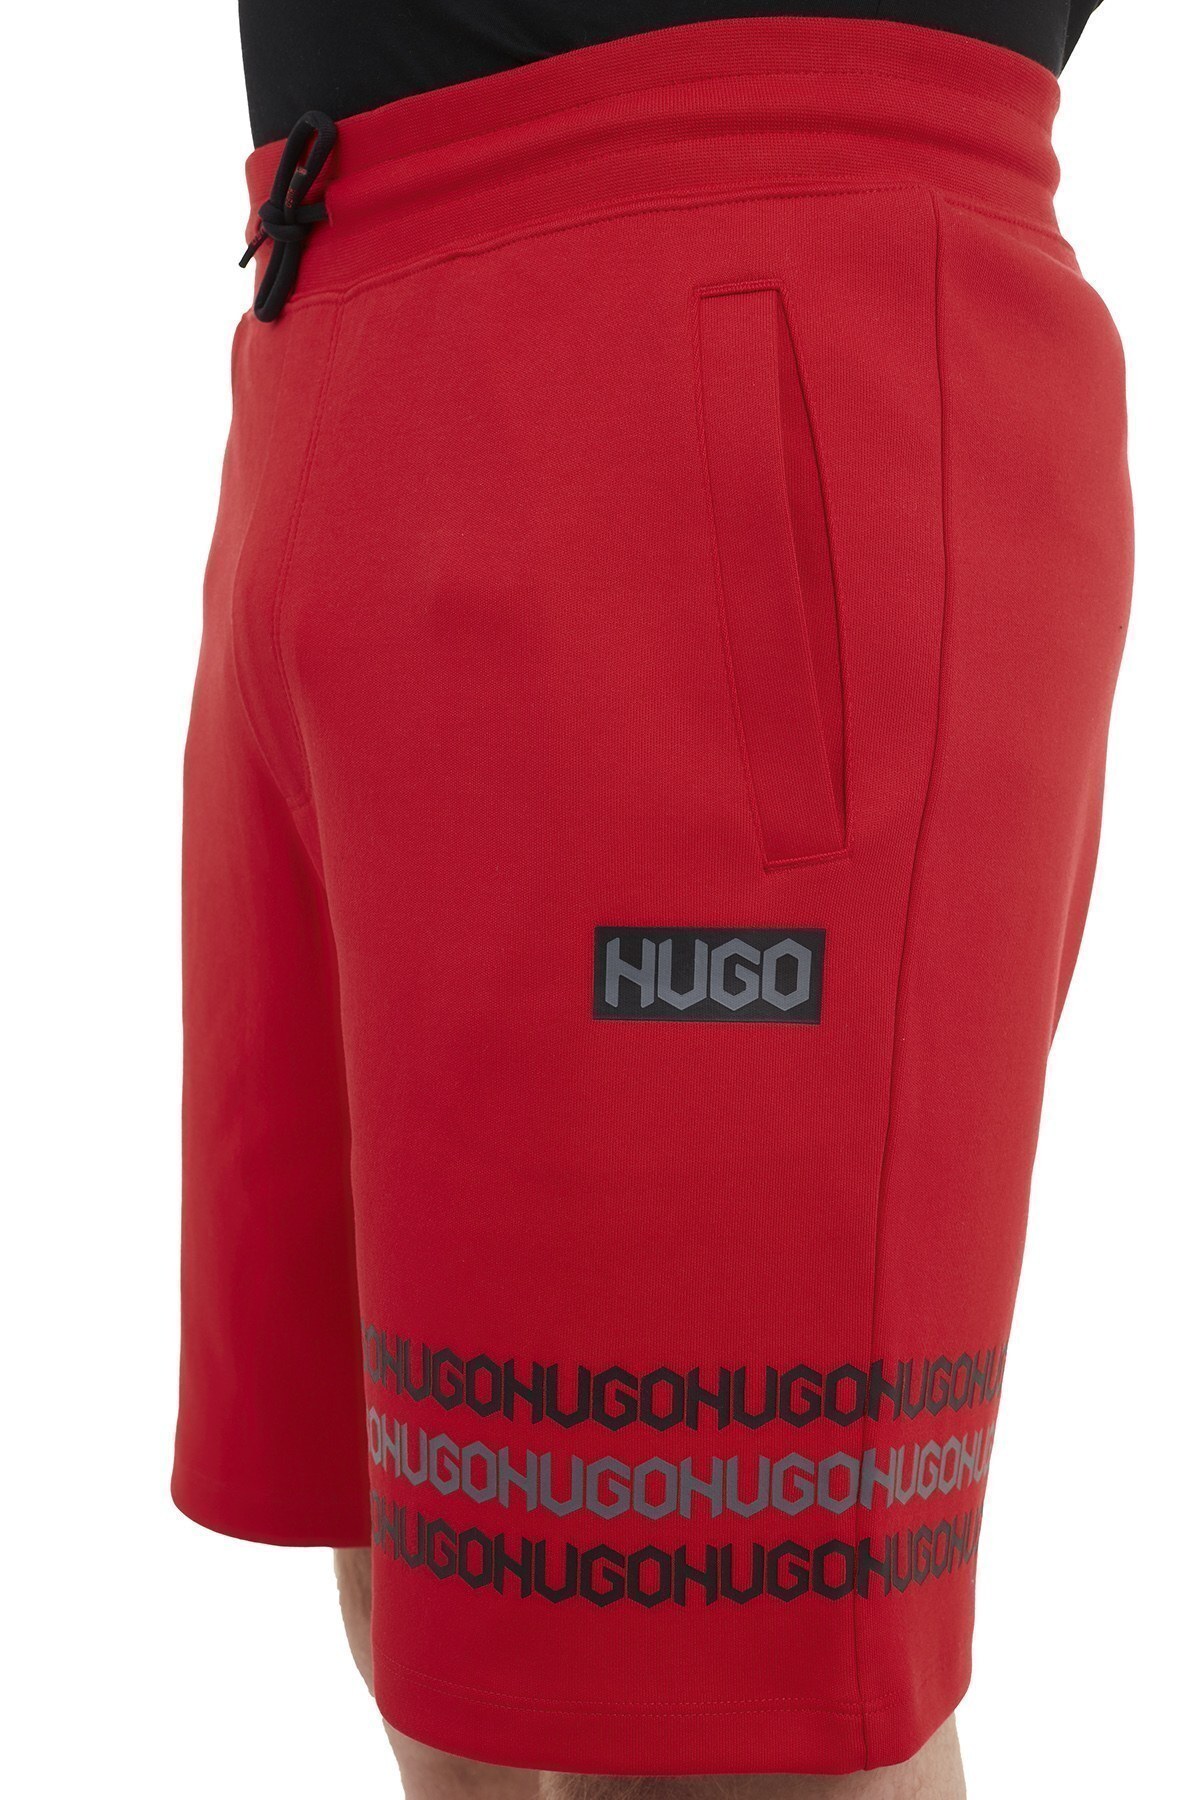 Hugo Boss Regular Fit Belden Bağlamalı % 100 Pamuk Erkek Short 50448857 693 KIRMIZI